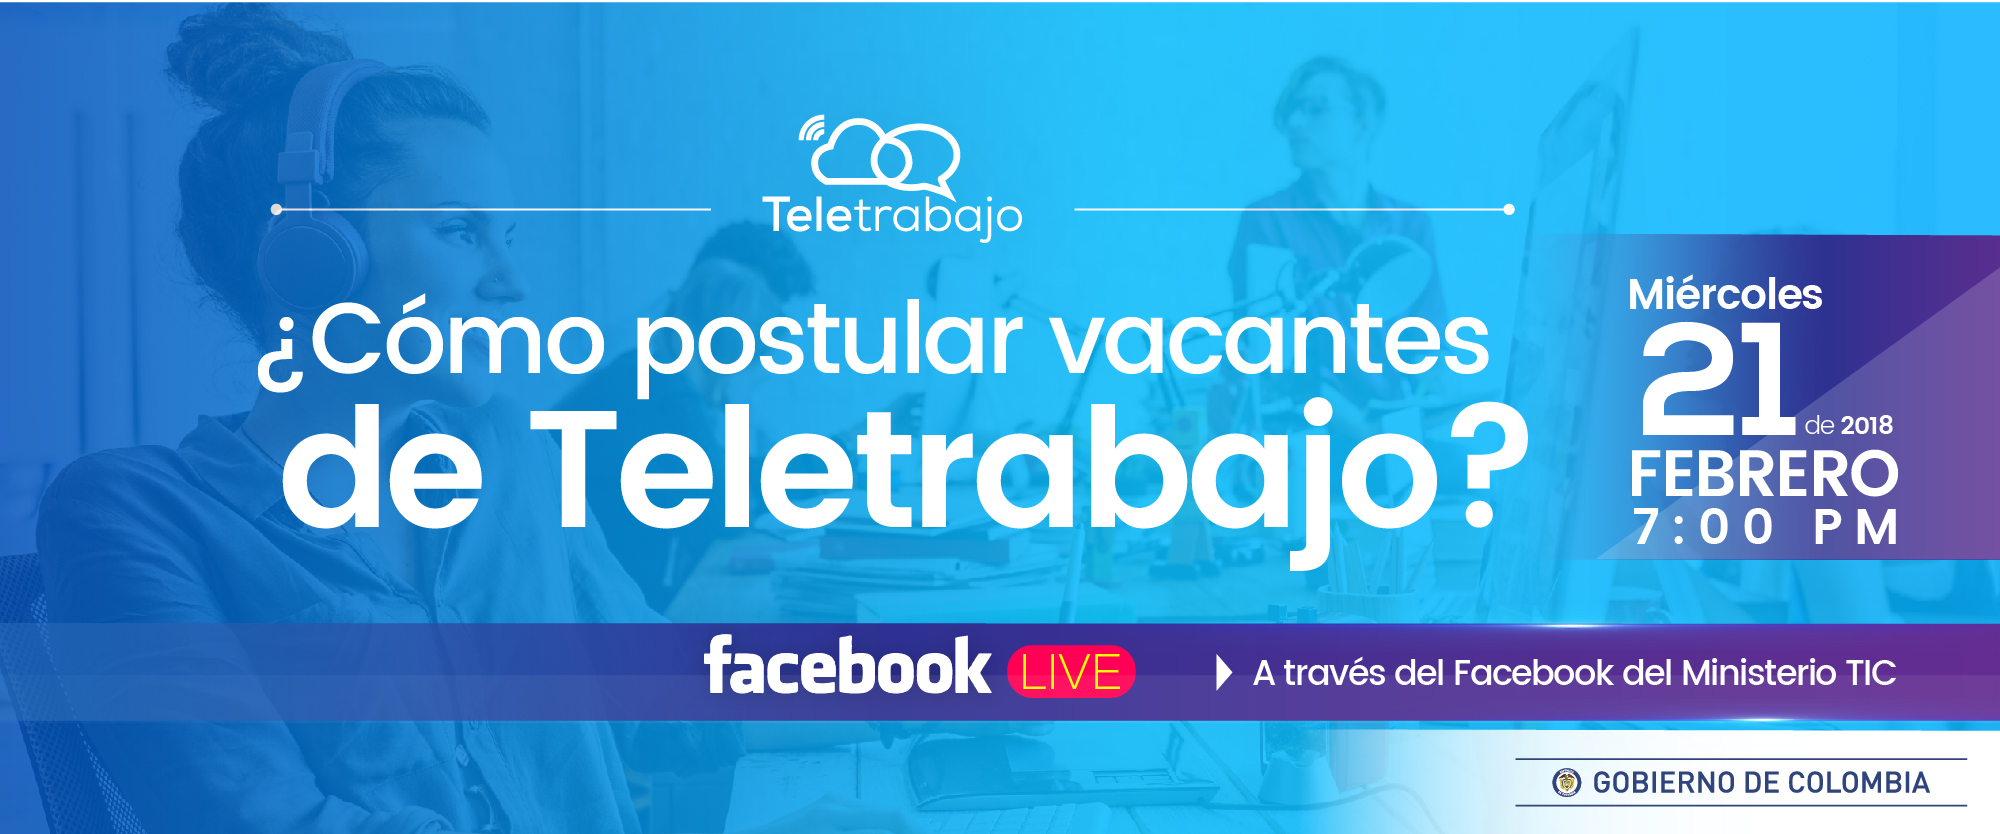 ¿Cómo postular vacantes de Teletrabajo?